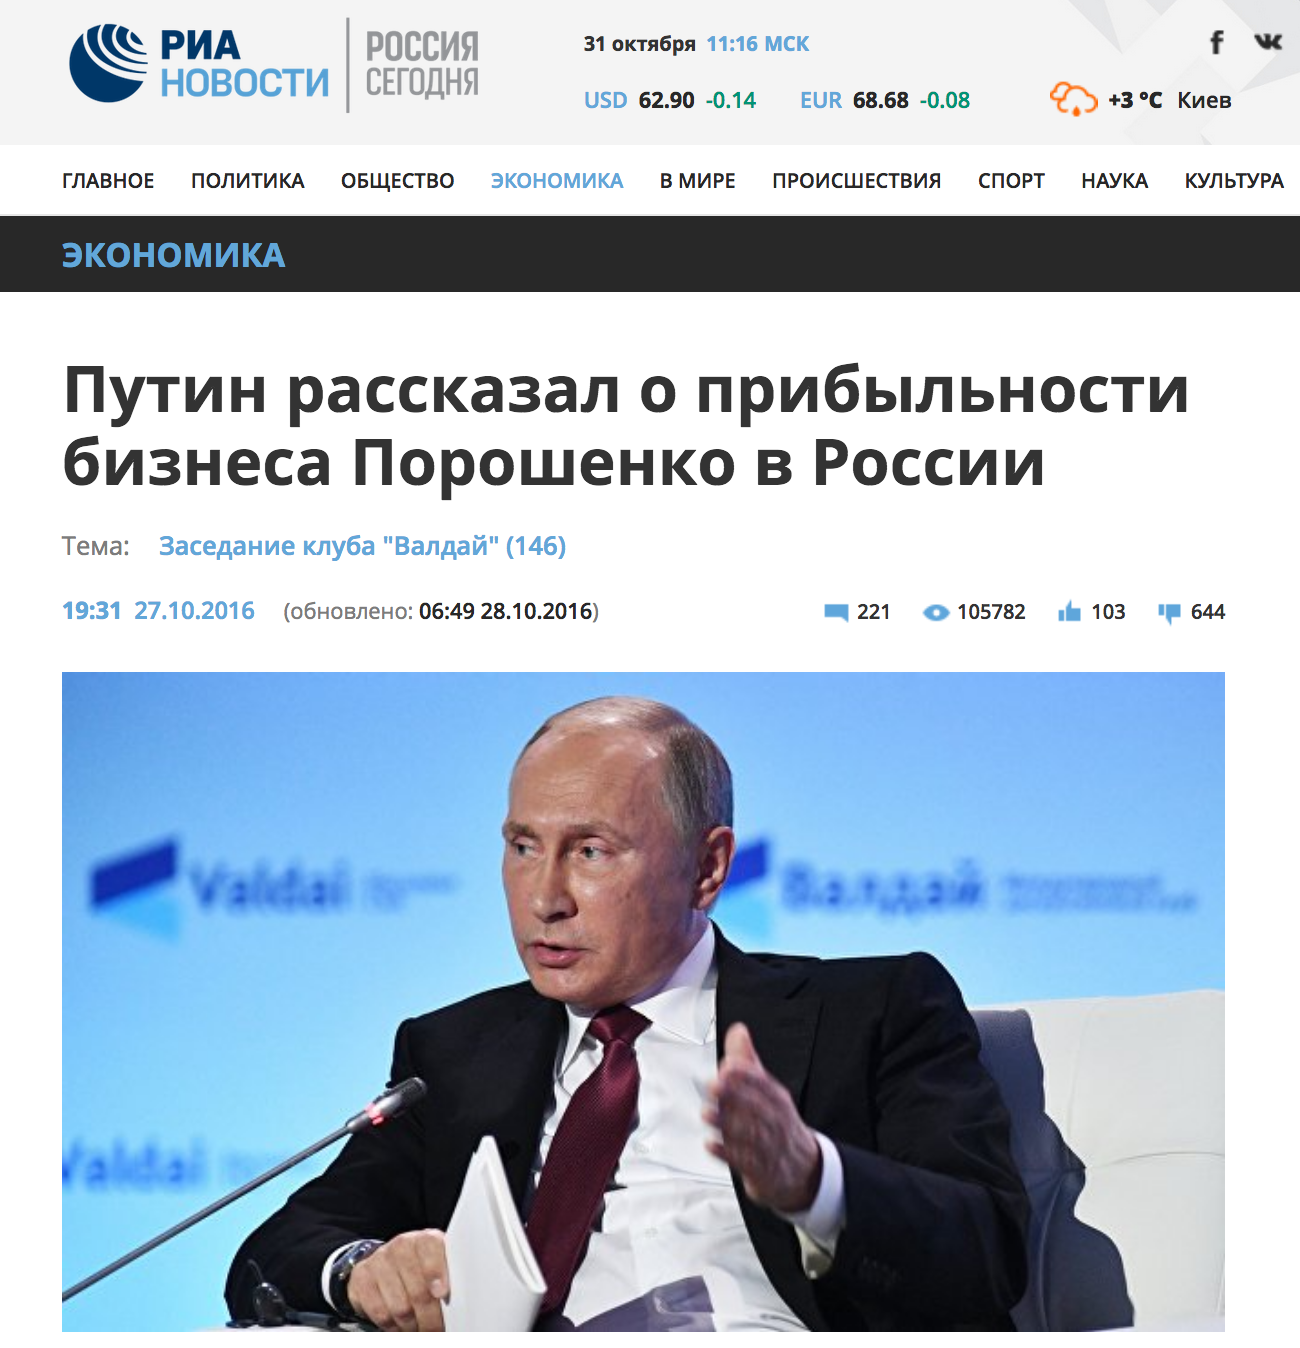 RIA: Putin contó sobre el negocio rentable de Poroshenko en Rusia